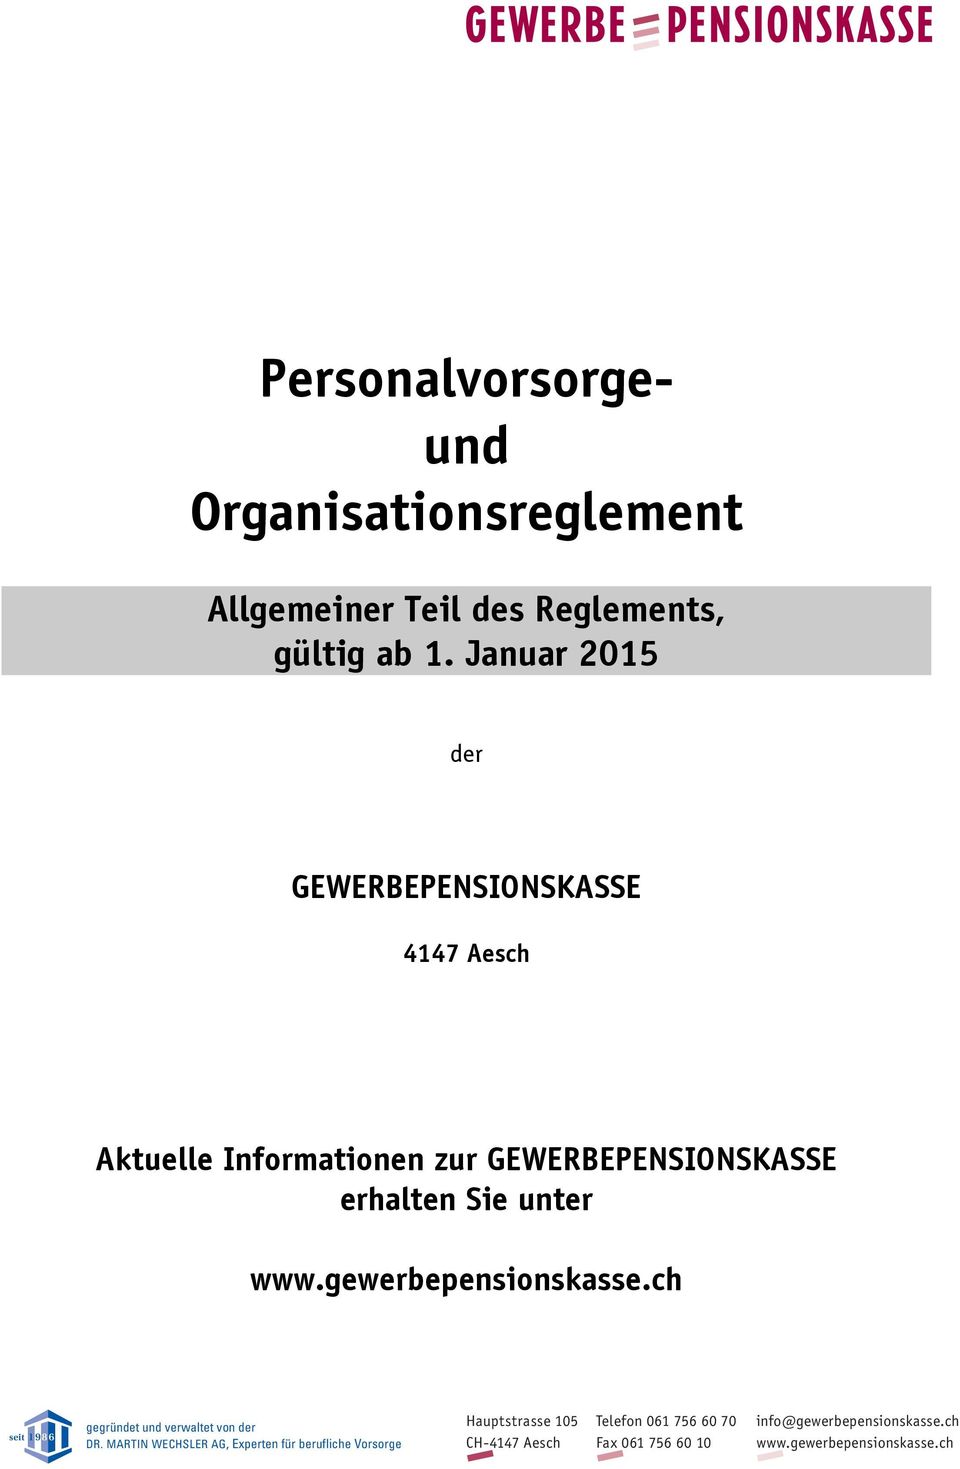 www.gewerbepensionskasse.ch seit 1 9 8 6 gegründet und verwaltet von der DR.